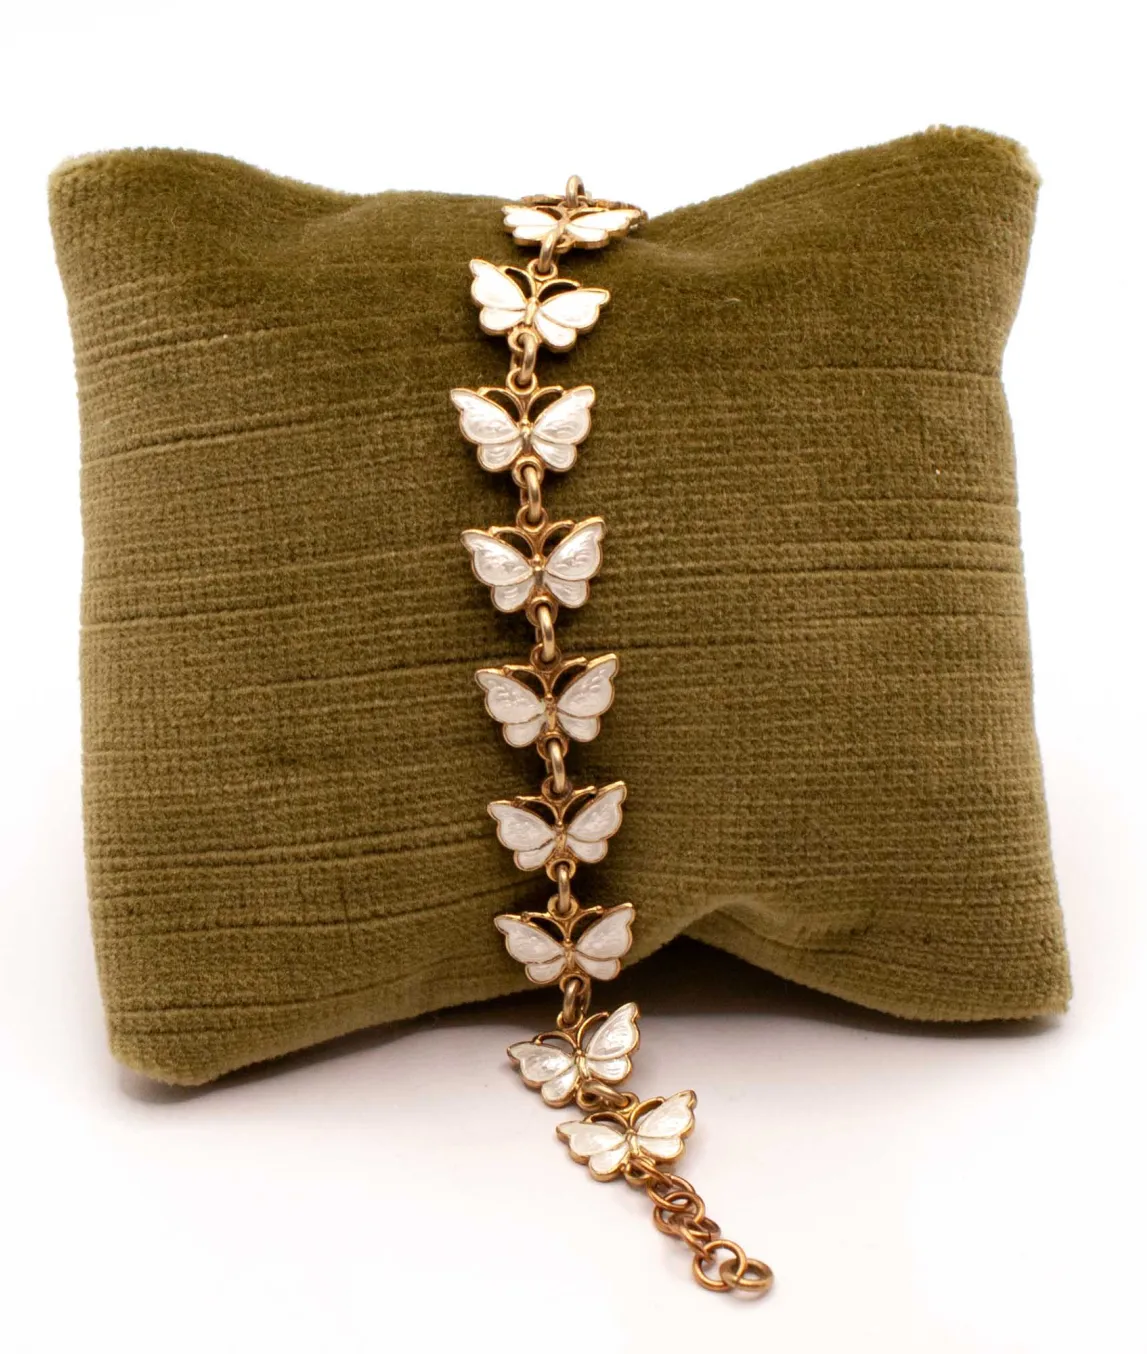 White enamel butterfly bracelet on a green pillow